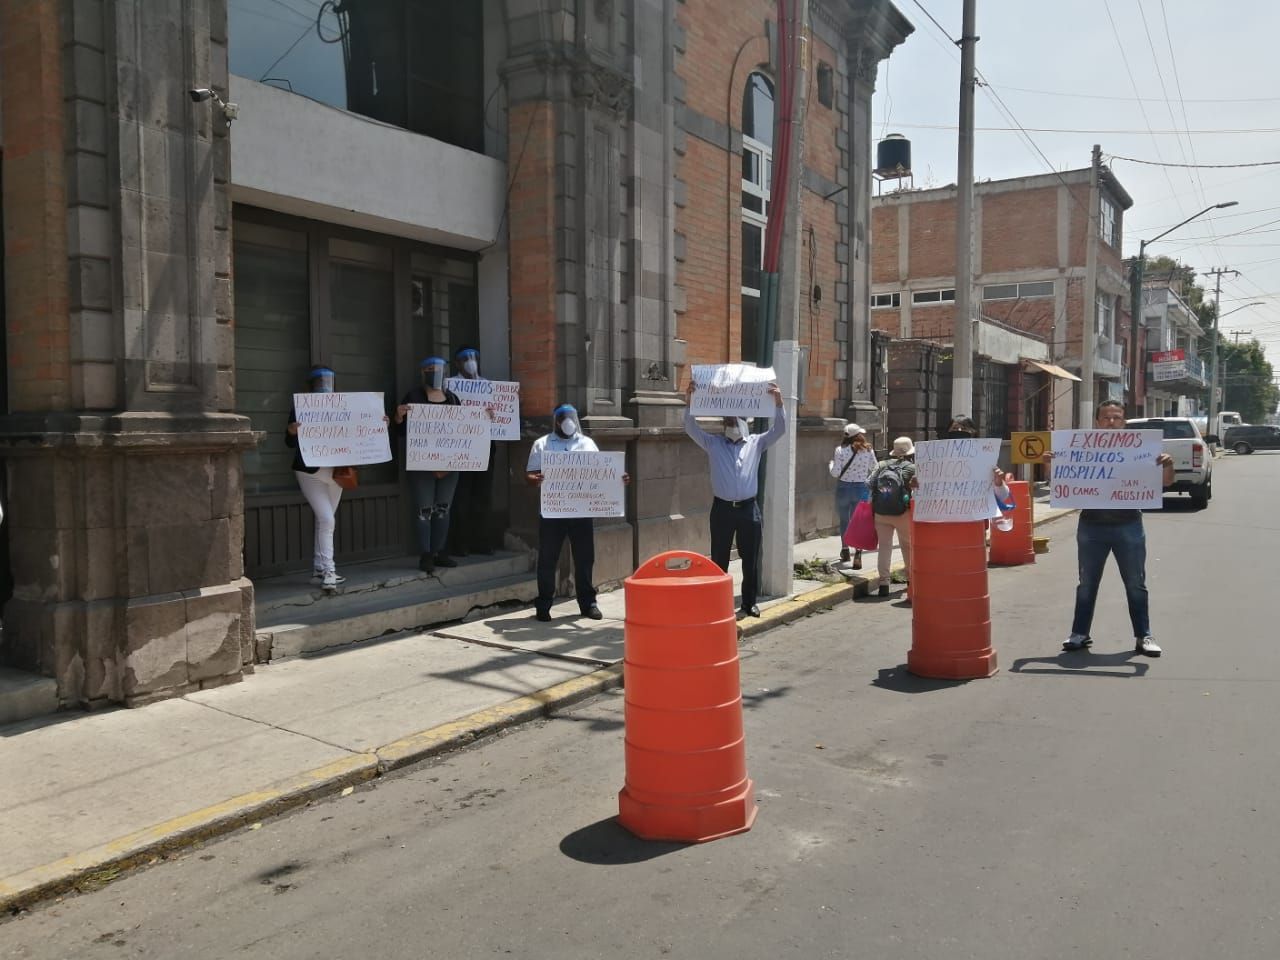 
Chimalhuacán solicita apoyos para evitar colapso de servicios de salud en hospitales